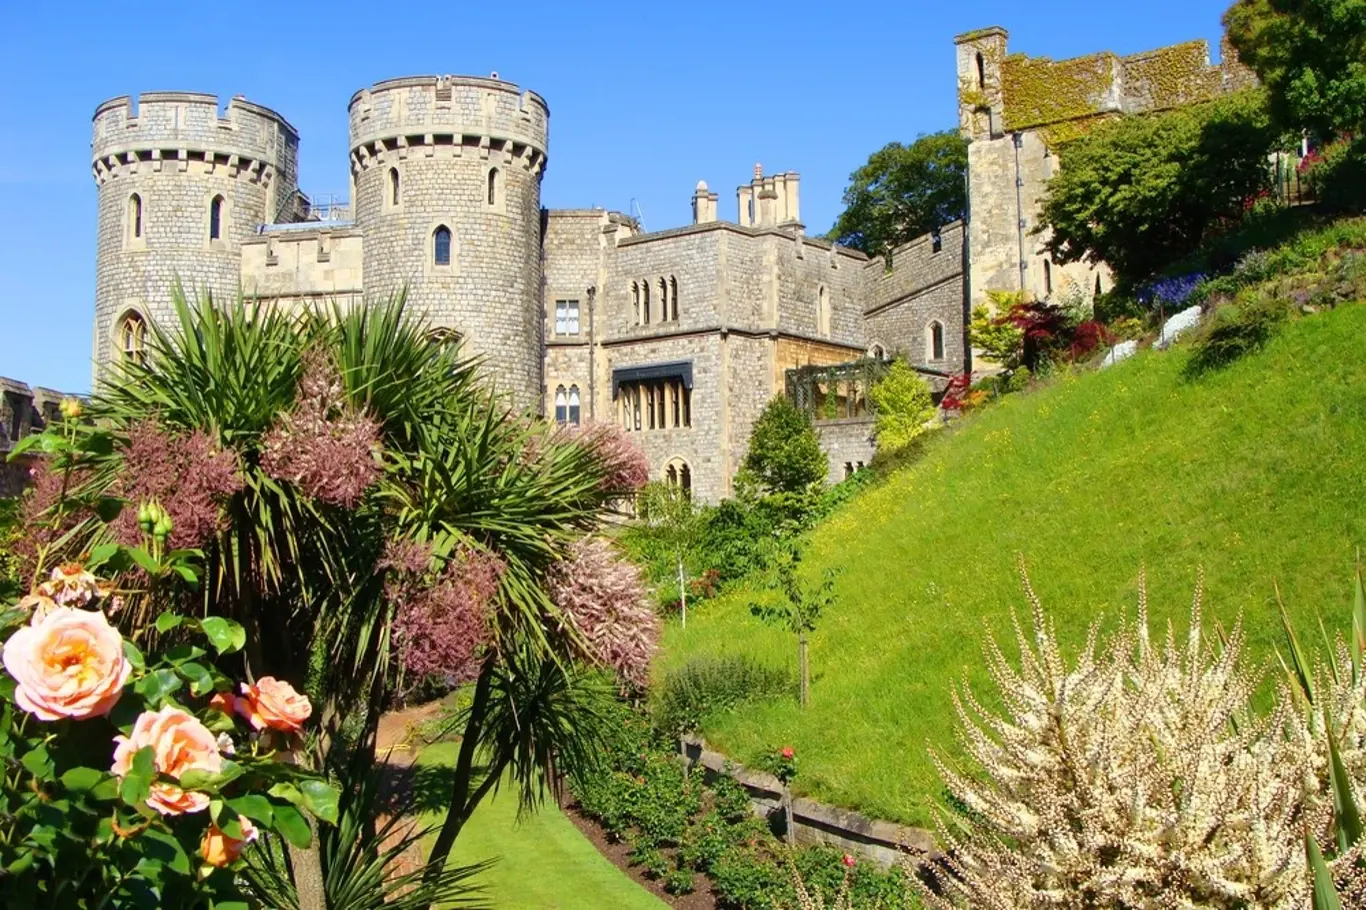 Jednou ze zahrad, kde se královna pohybuje, je zahrada hradu Windsor